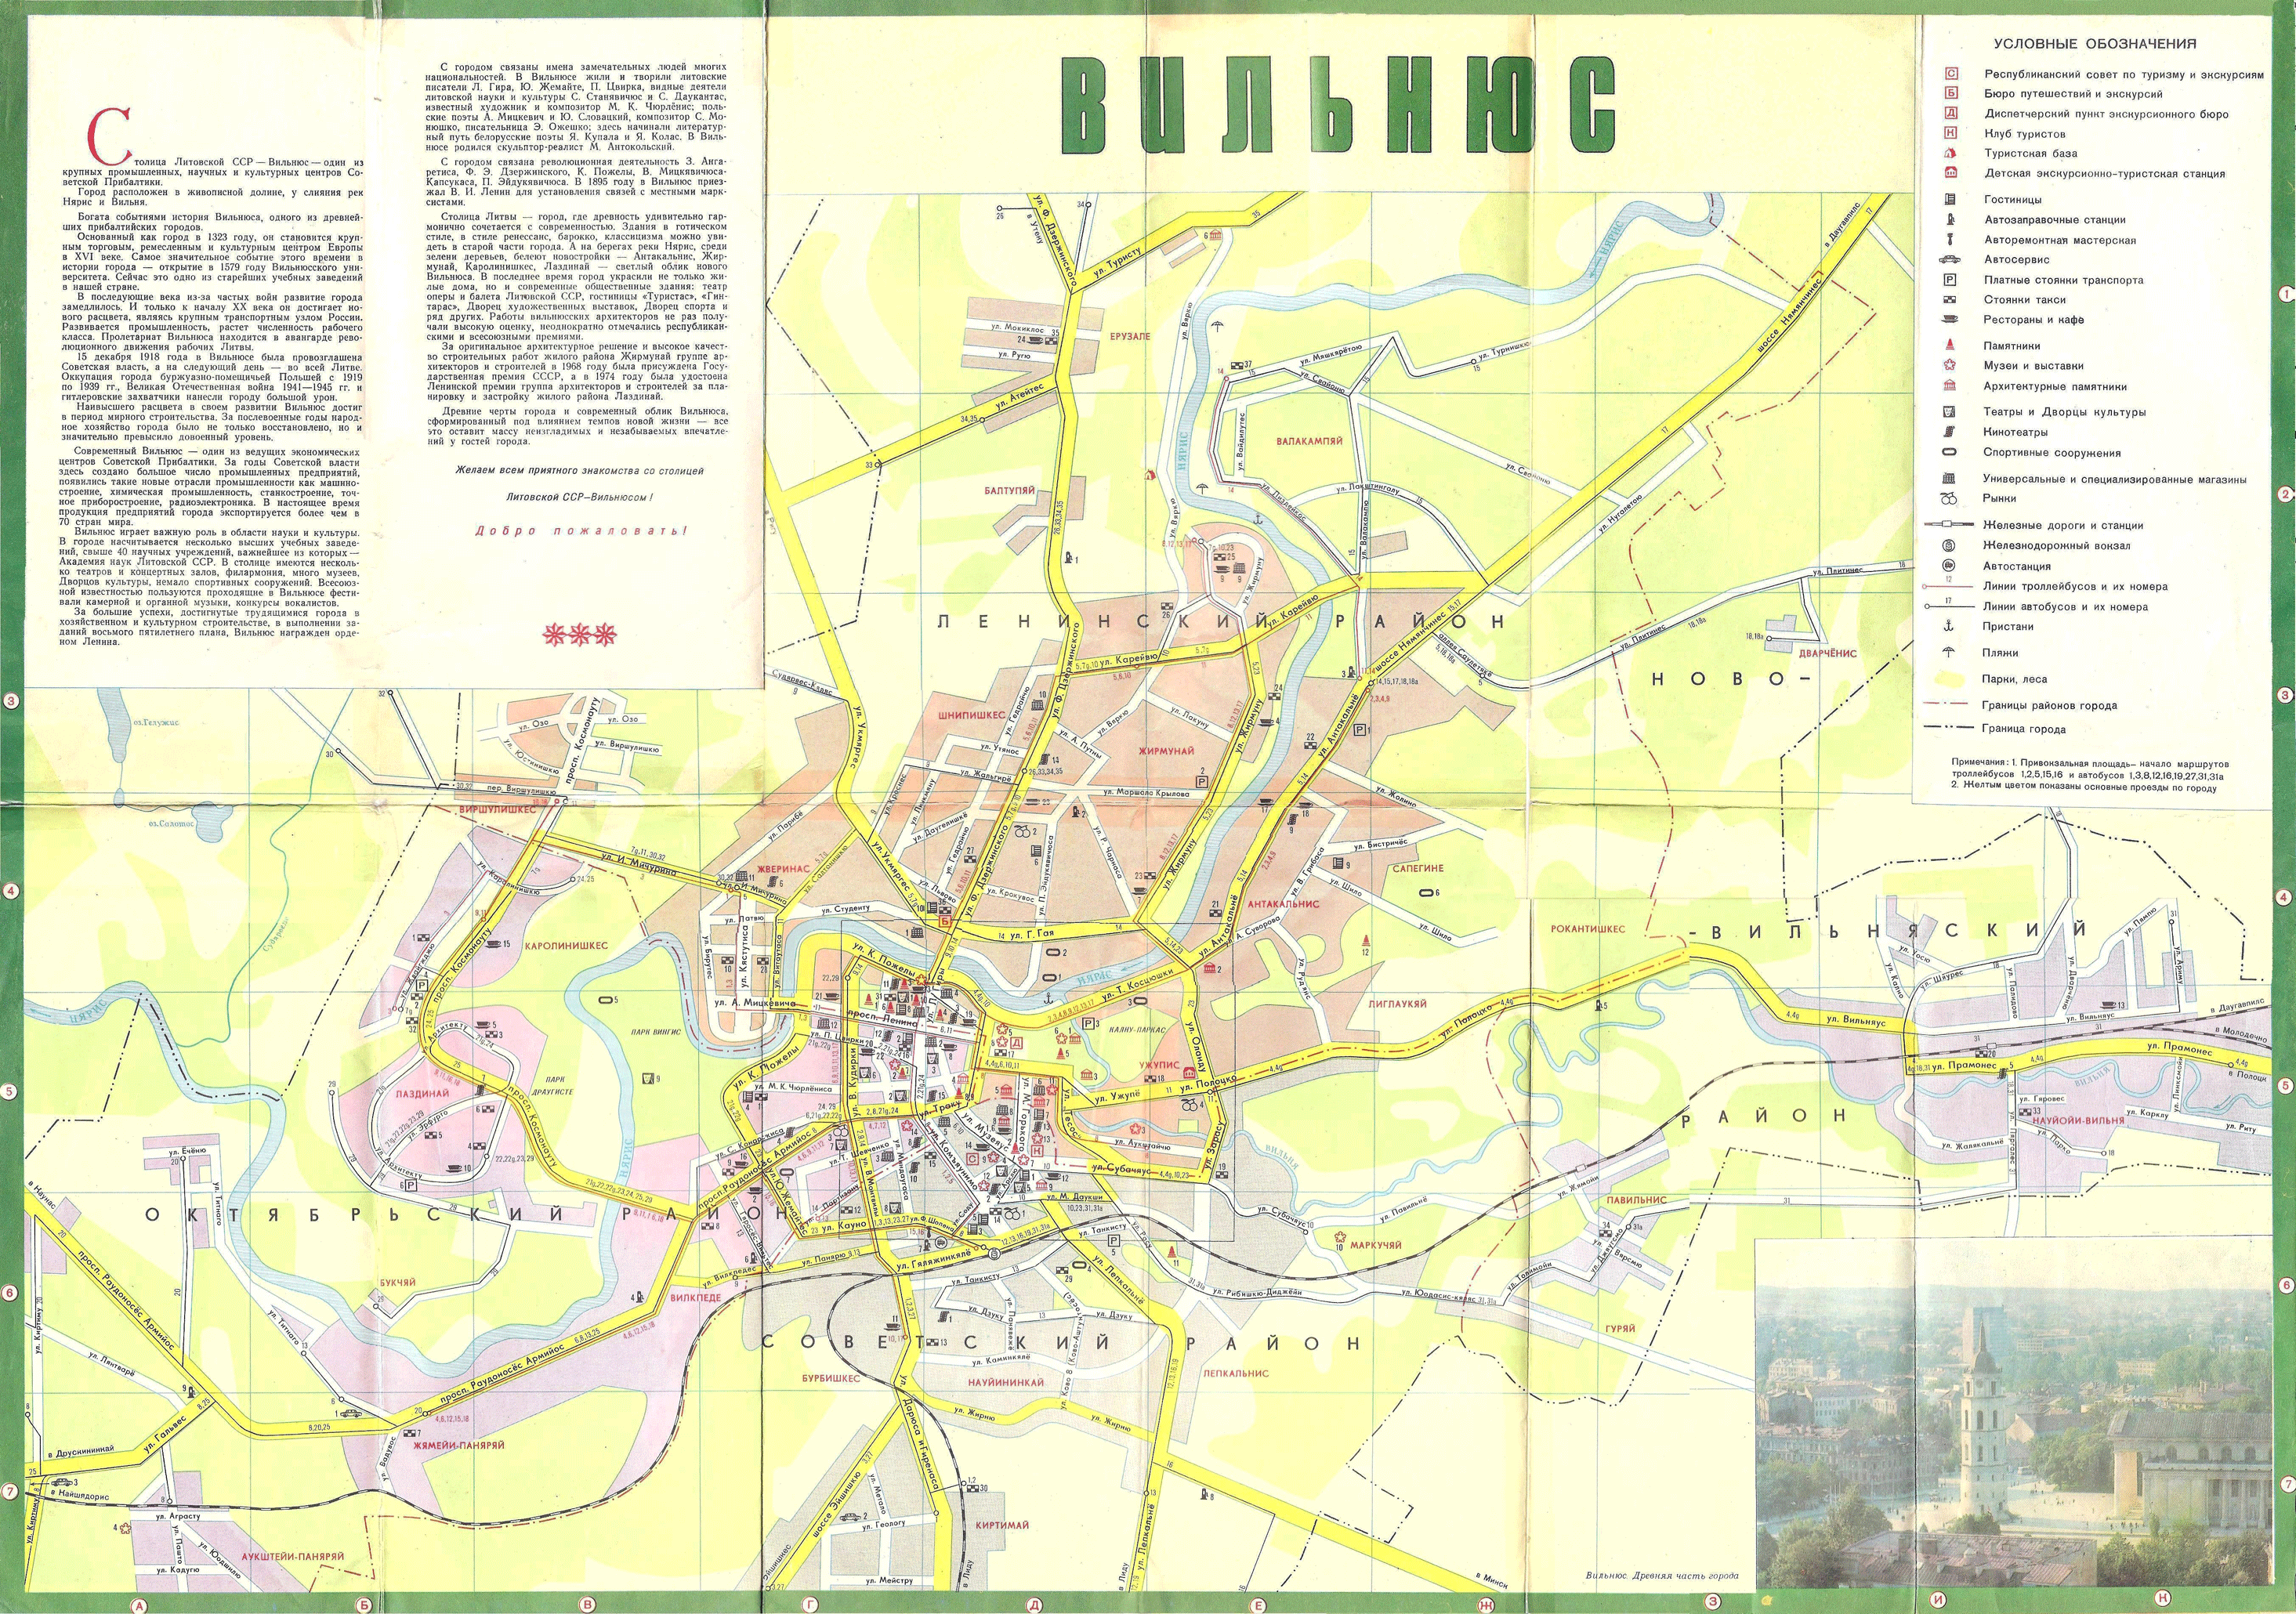 Vilnius — Maps